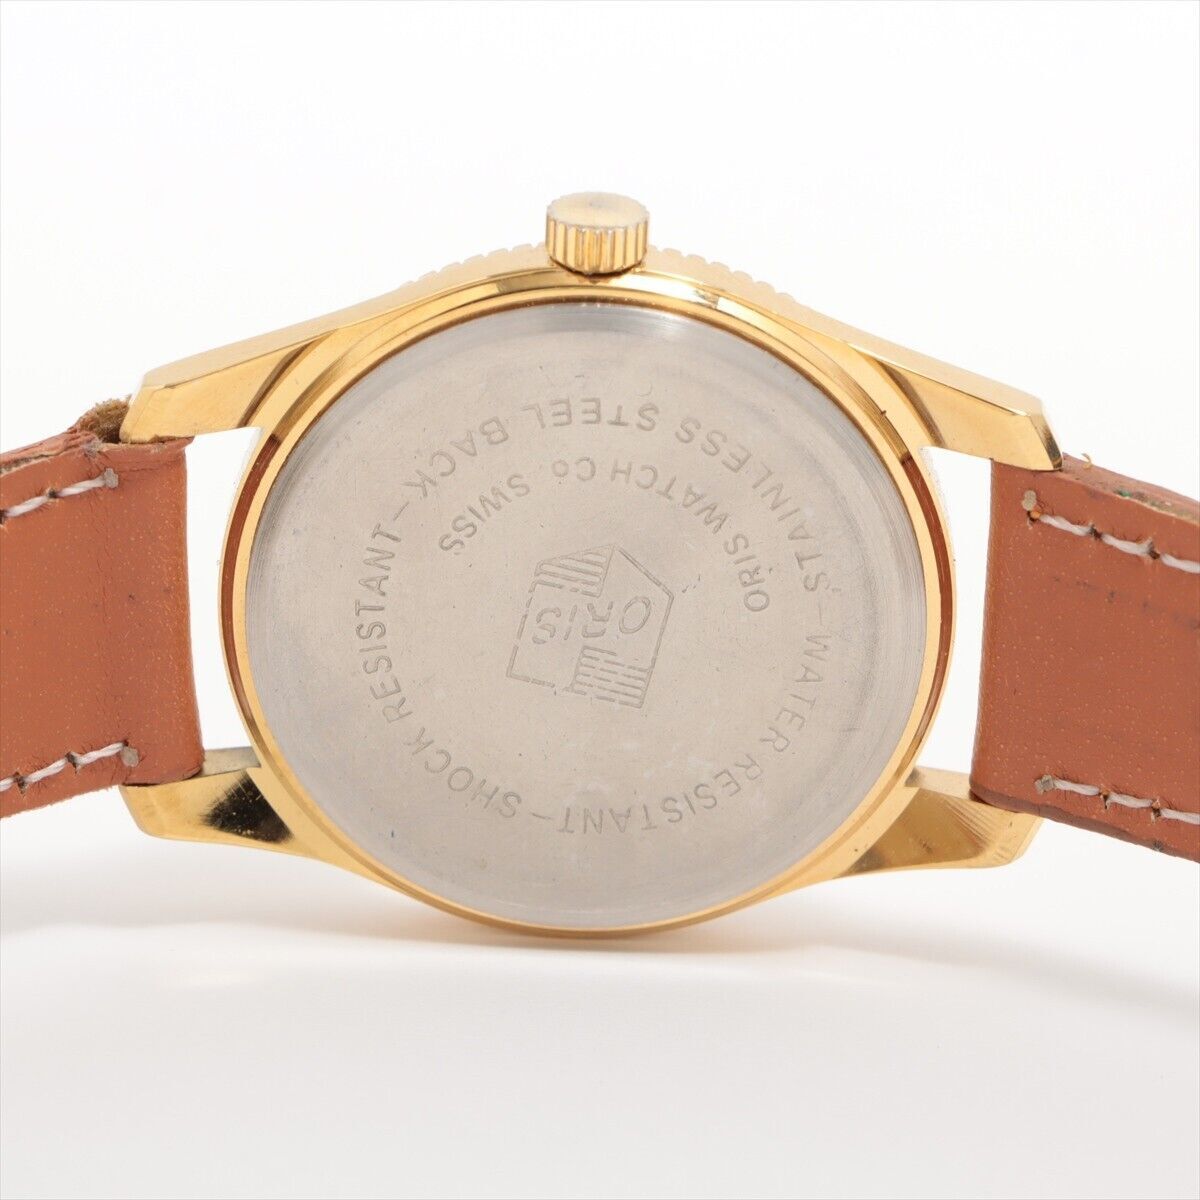  稼働 オリス SS x レザー 手巻き シャンパン文字盤 1円 腕時計 の画像2